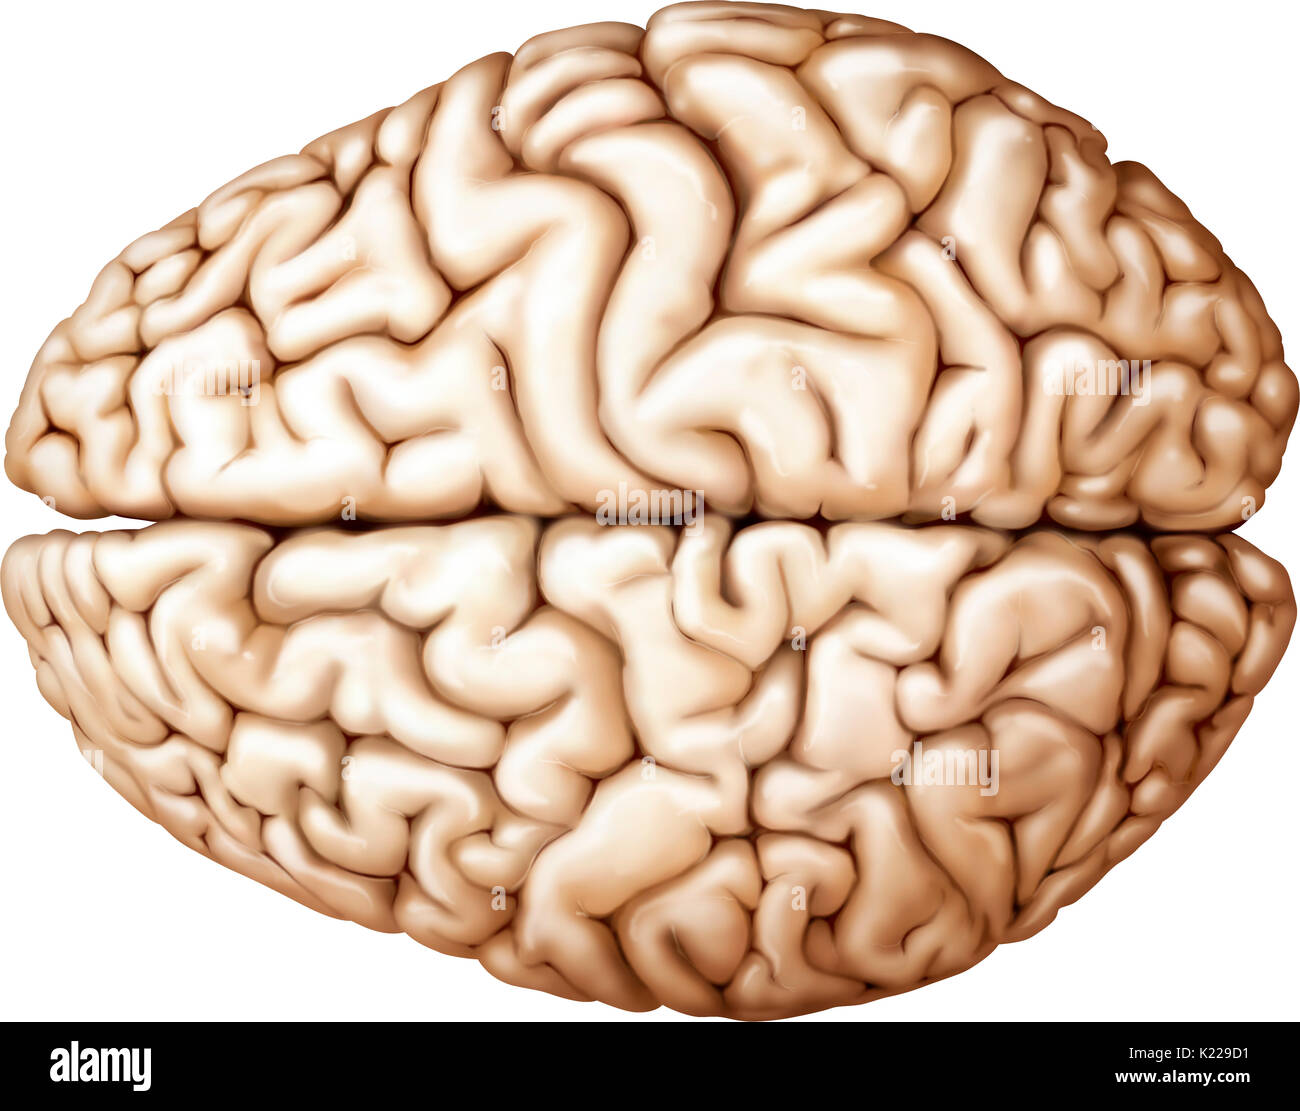 Il cervello è la più voluminosa e la parte più complessa del cervello. Esso è costituito da due semisfere suddiviso in quattro lobi cerebrali, che coprono la diencephalon. Le funzioni più complesse sono completati con lo strato esterno del cervello, la corteccia cerebrale. Foto Stock